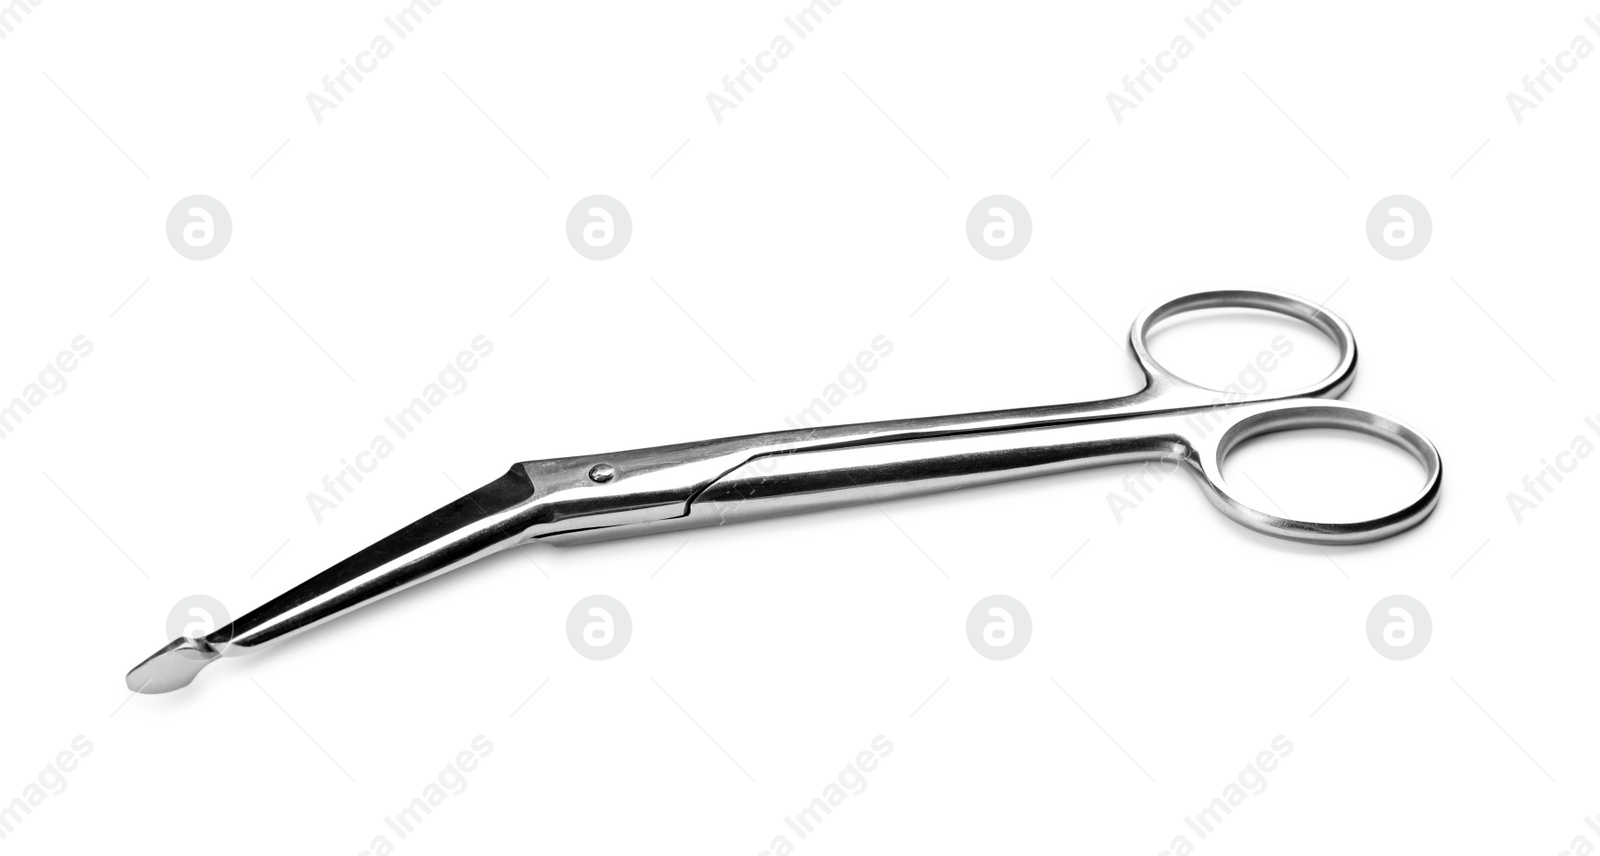 Photo of Bandage scissors on white background. Medical tool